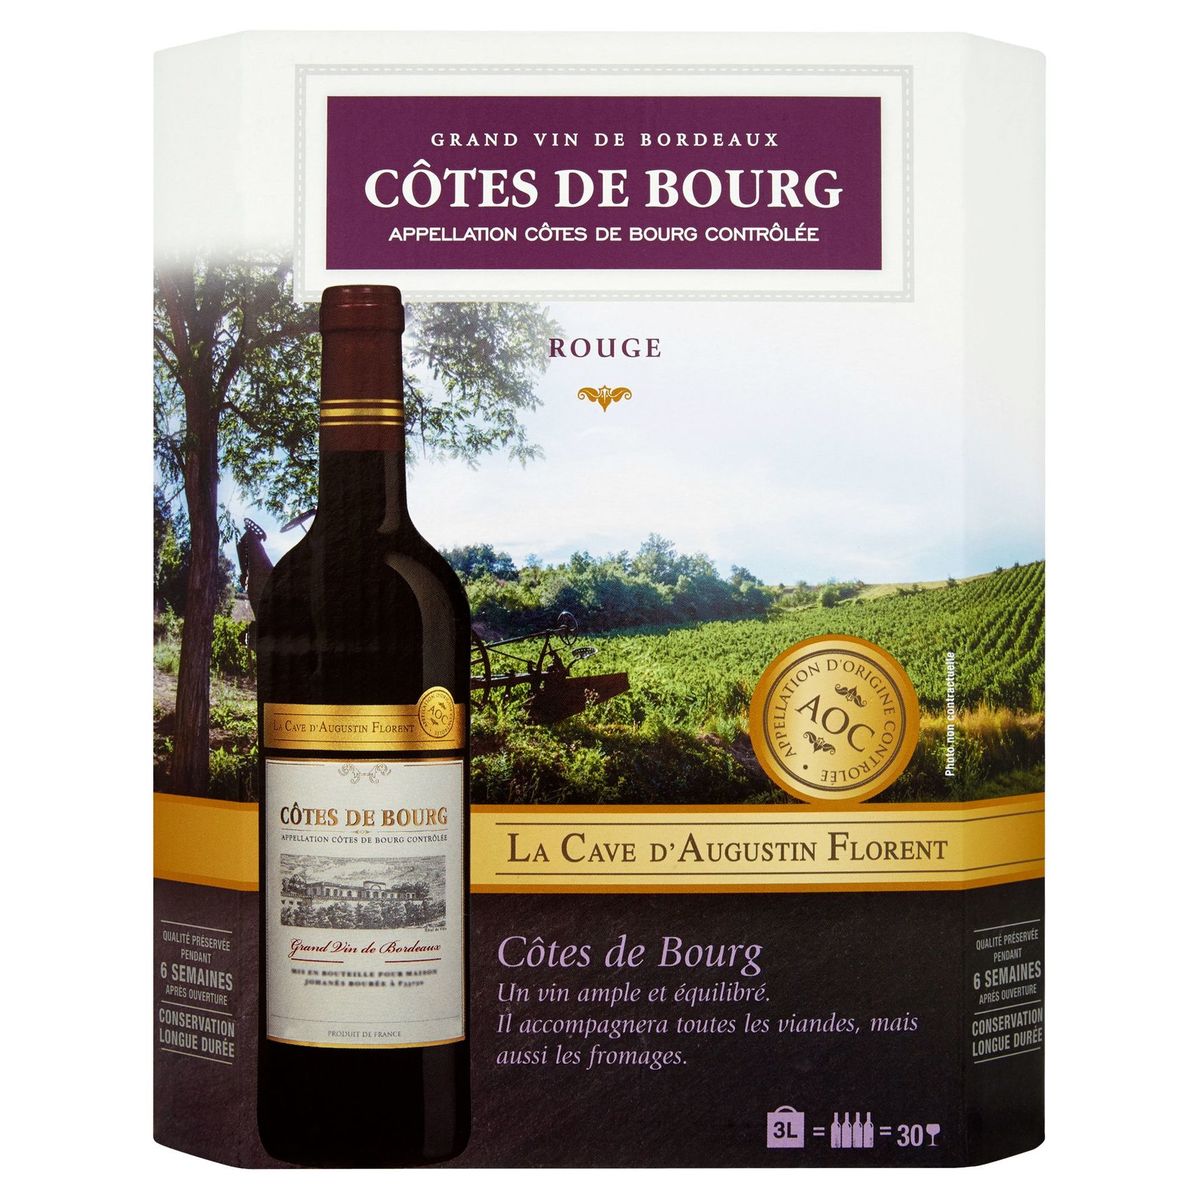 La Cave d'Augustin Florent Côtes de Bourg Grand vin de Bordeaux rouge 3 L